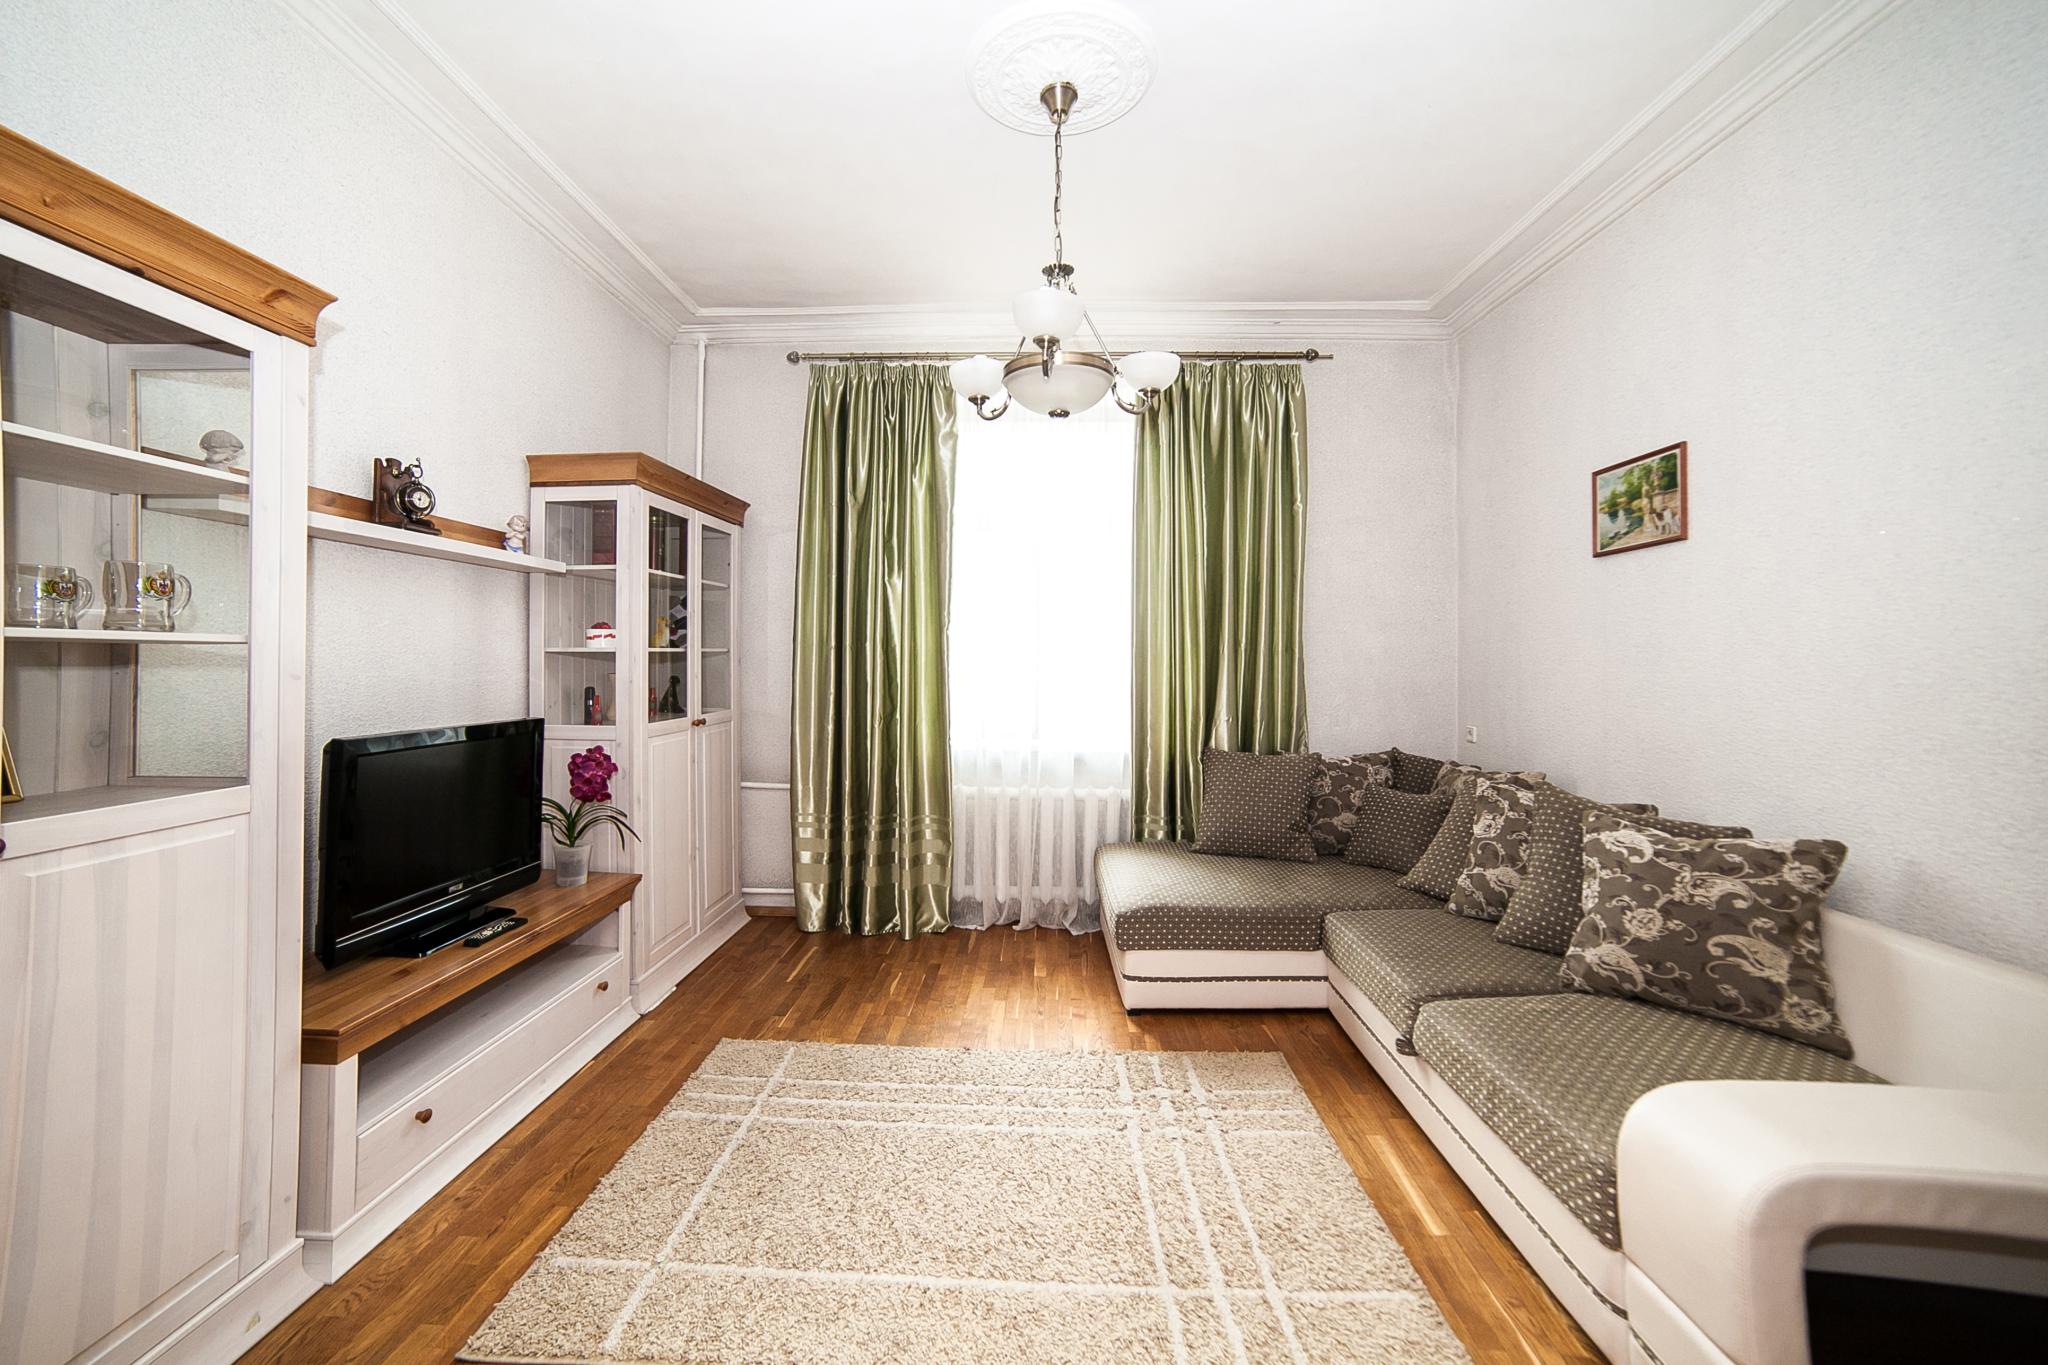 Купить квартиру в городе Минске.